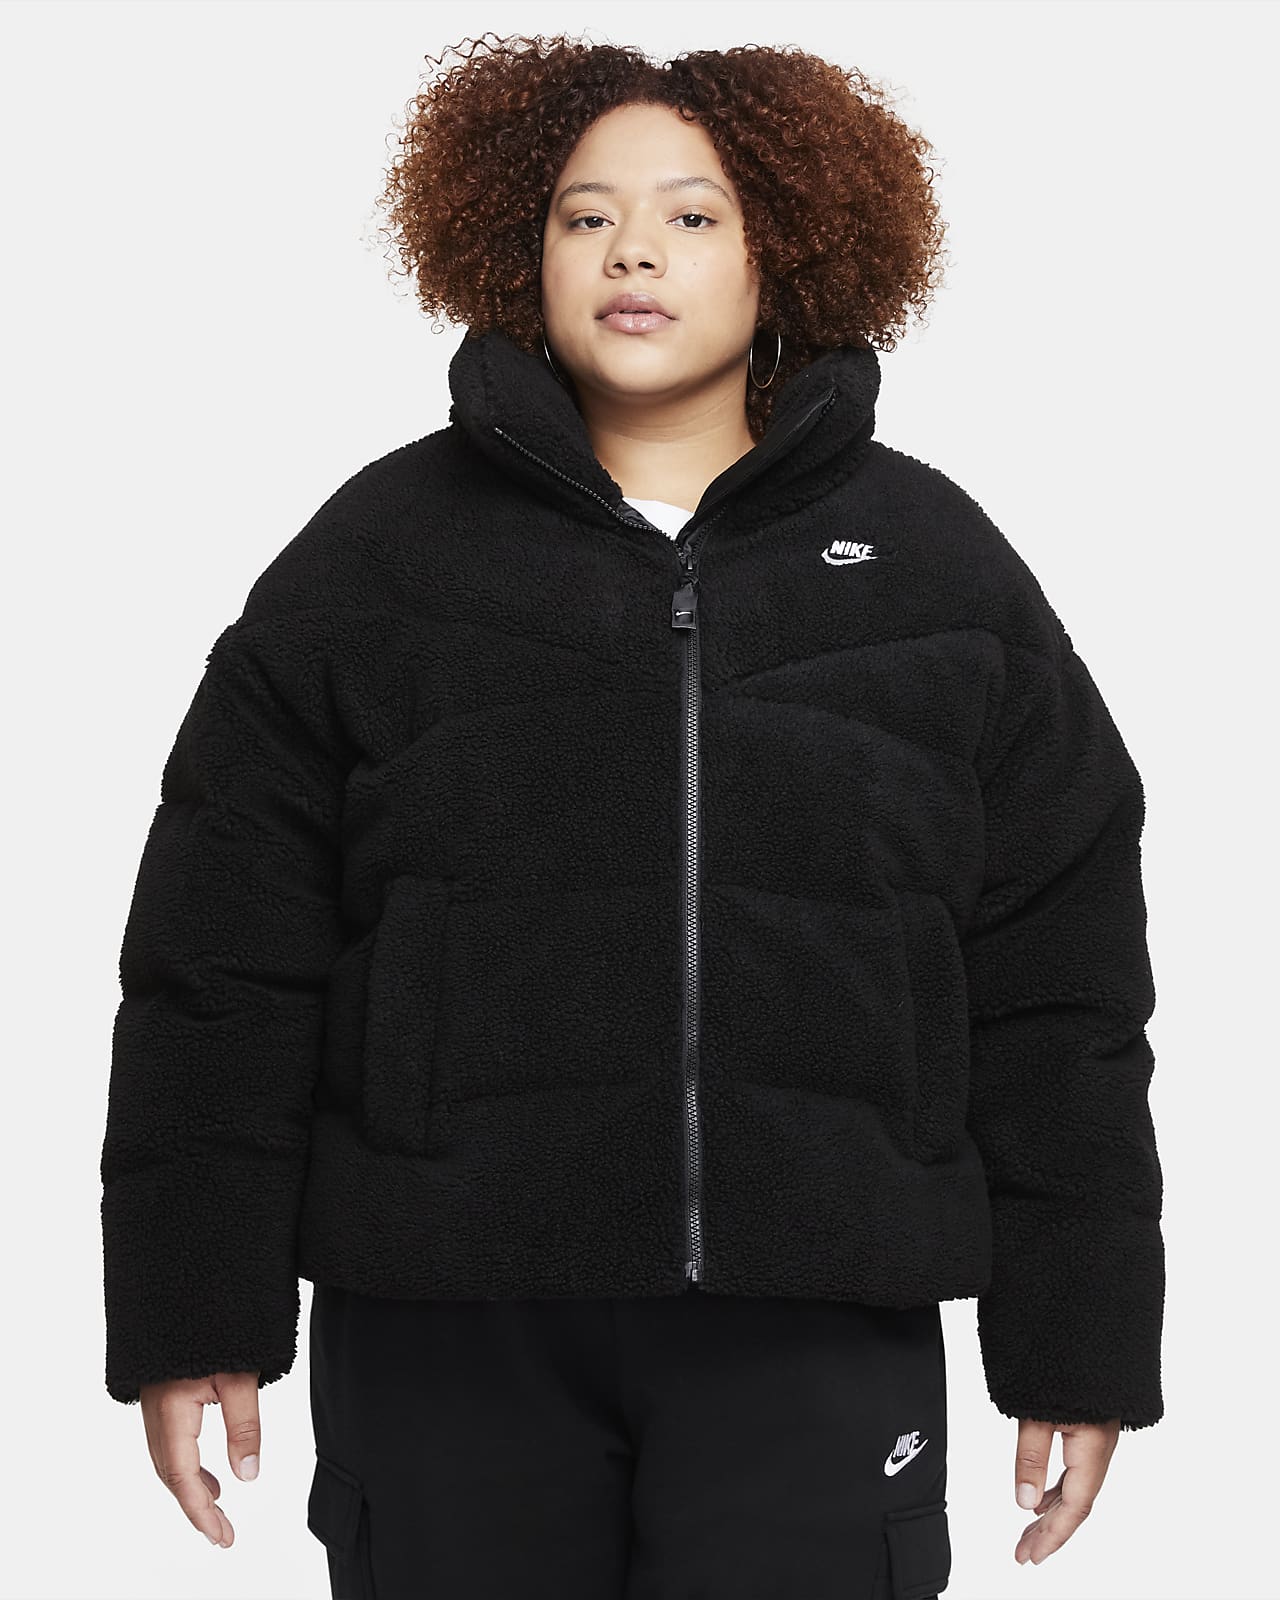 Nike Sportswear Therma-FIT City Series Women's Fleece Jacket (Plus Size)